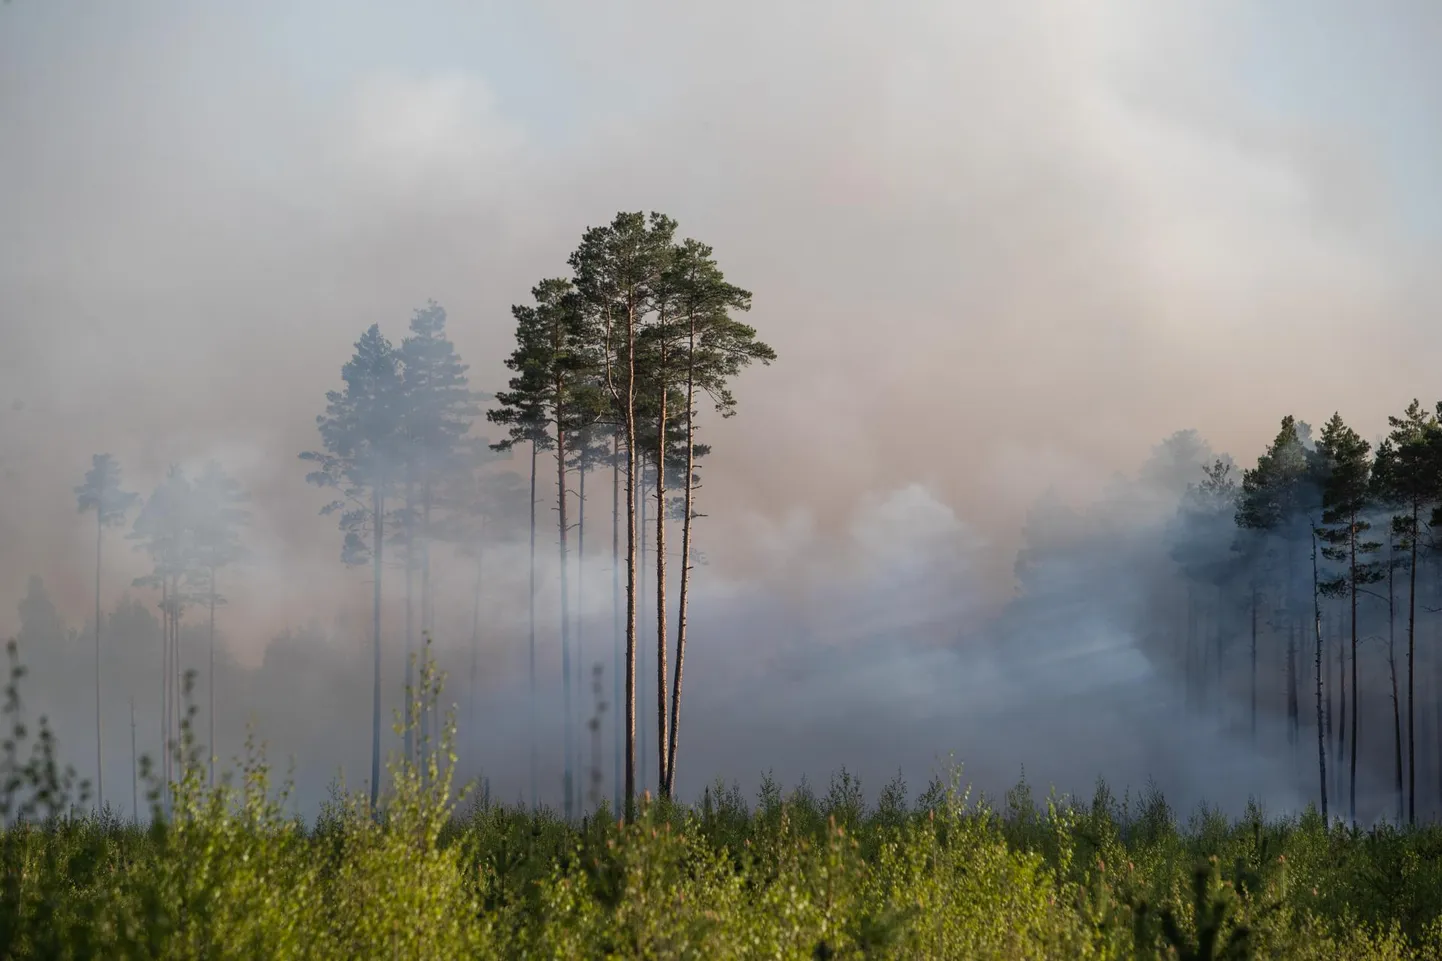 See pilt Sultsi küla metsapõlengust on tehtud 13. mail. Tulekahju puhkes mitmes kohas ja seda kustutati kolm päeva.